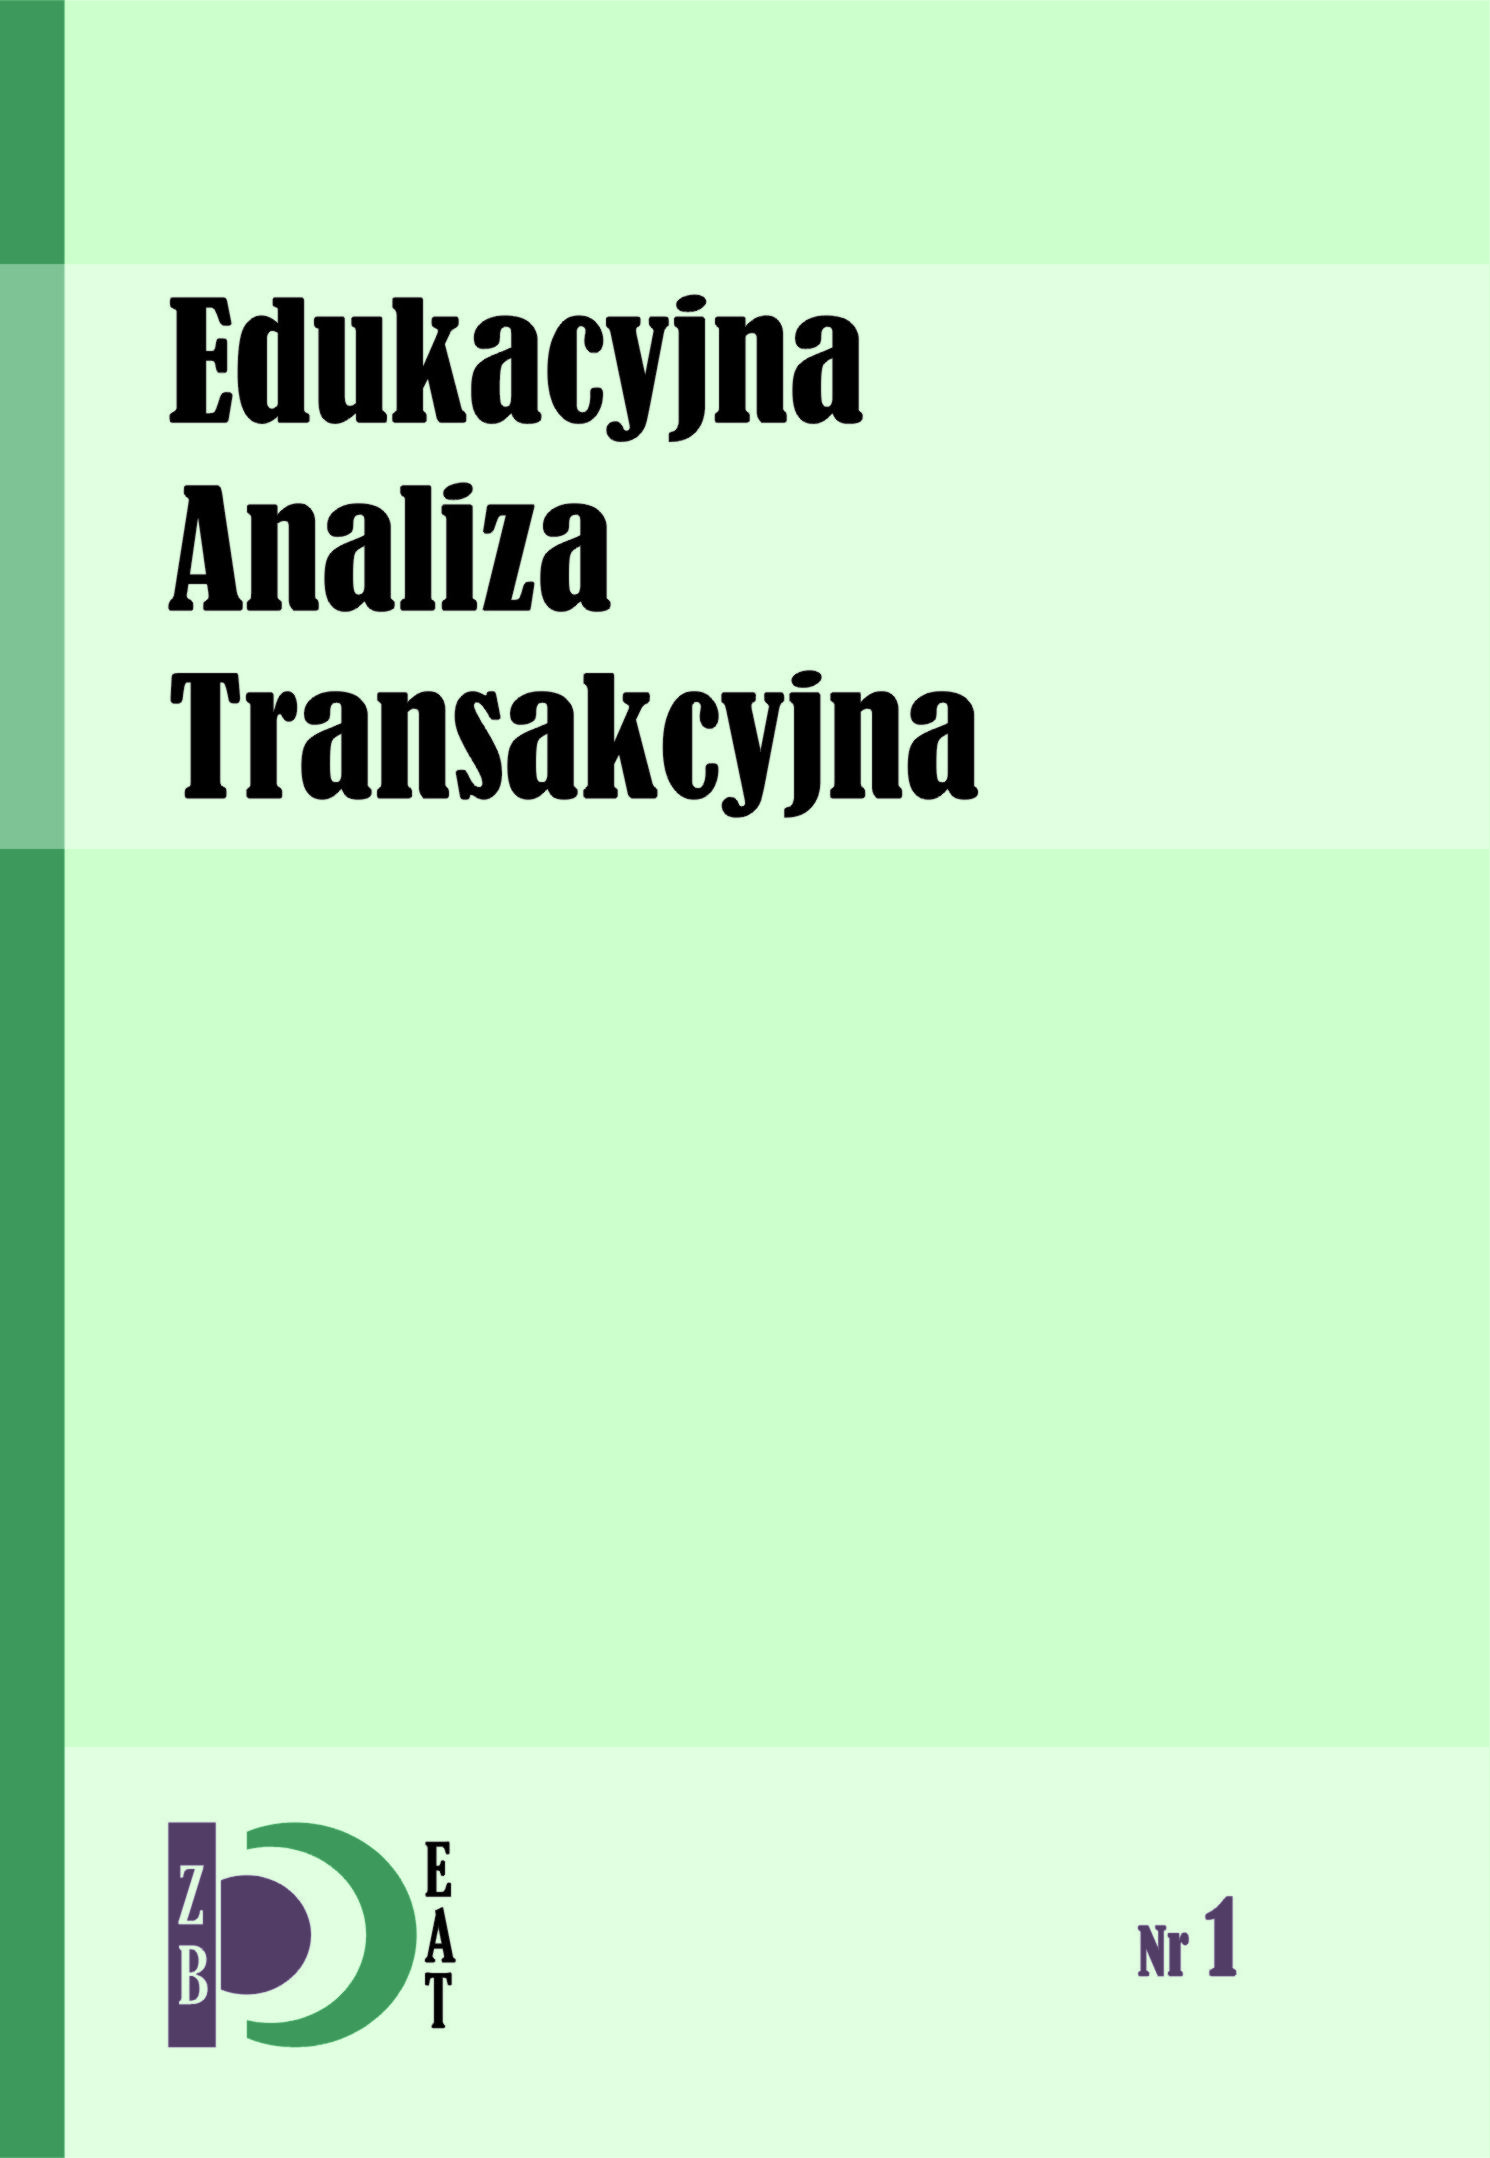 (review) Julie Hay, Analiza Transakcyjna dla trenerów,
Grupa Doradczo-Szkoleniowa TRANSMISJA, Kraków 2010 Cover Image